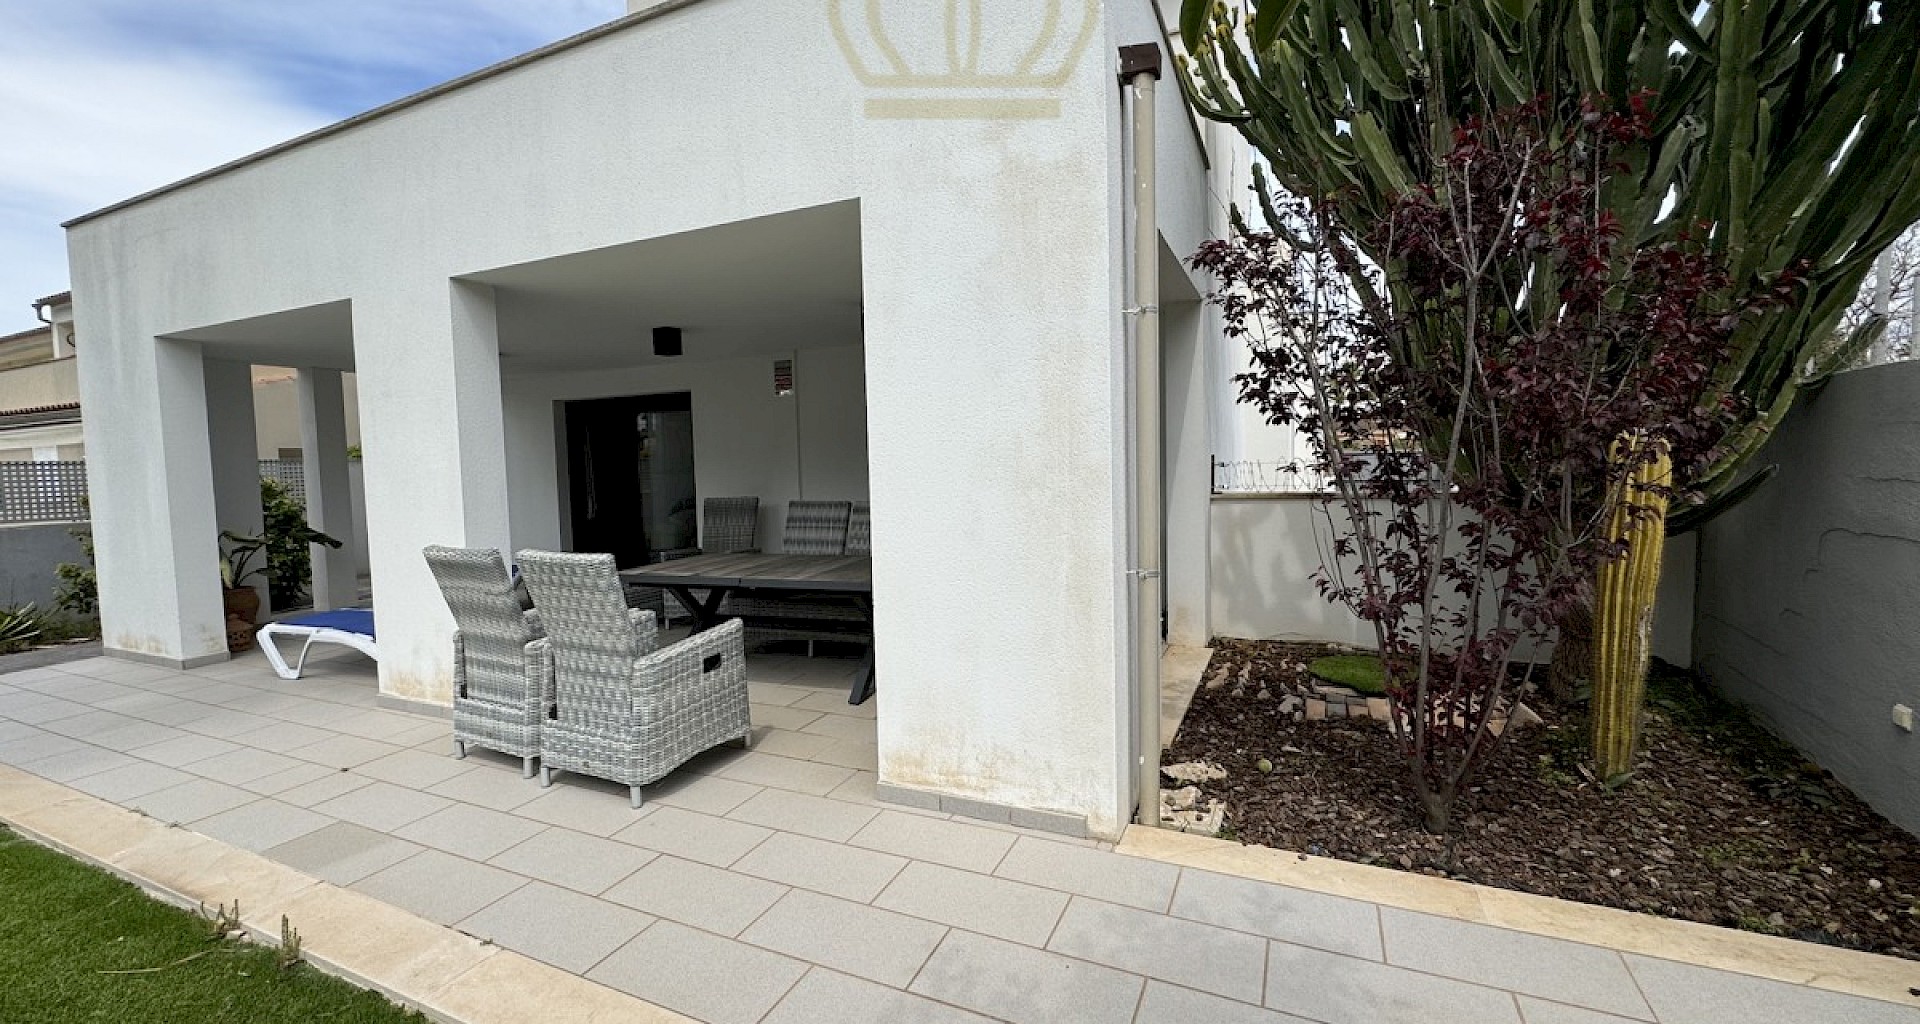 KROHN & LUEDEMANN Modernes Haus in Can Pastilla bei Palma zu kaufen 